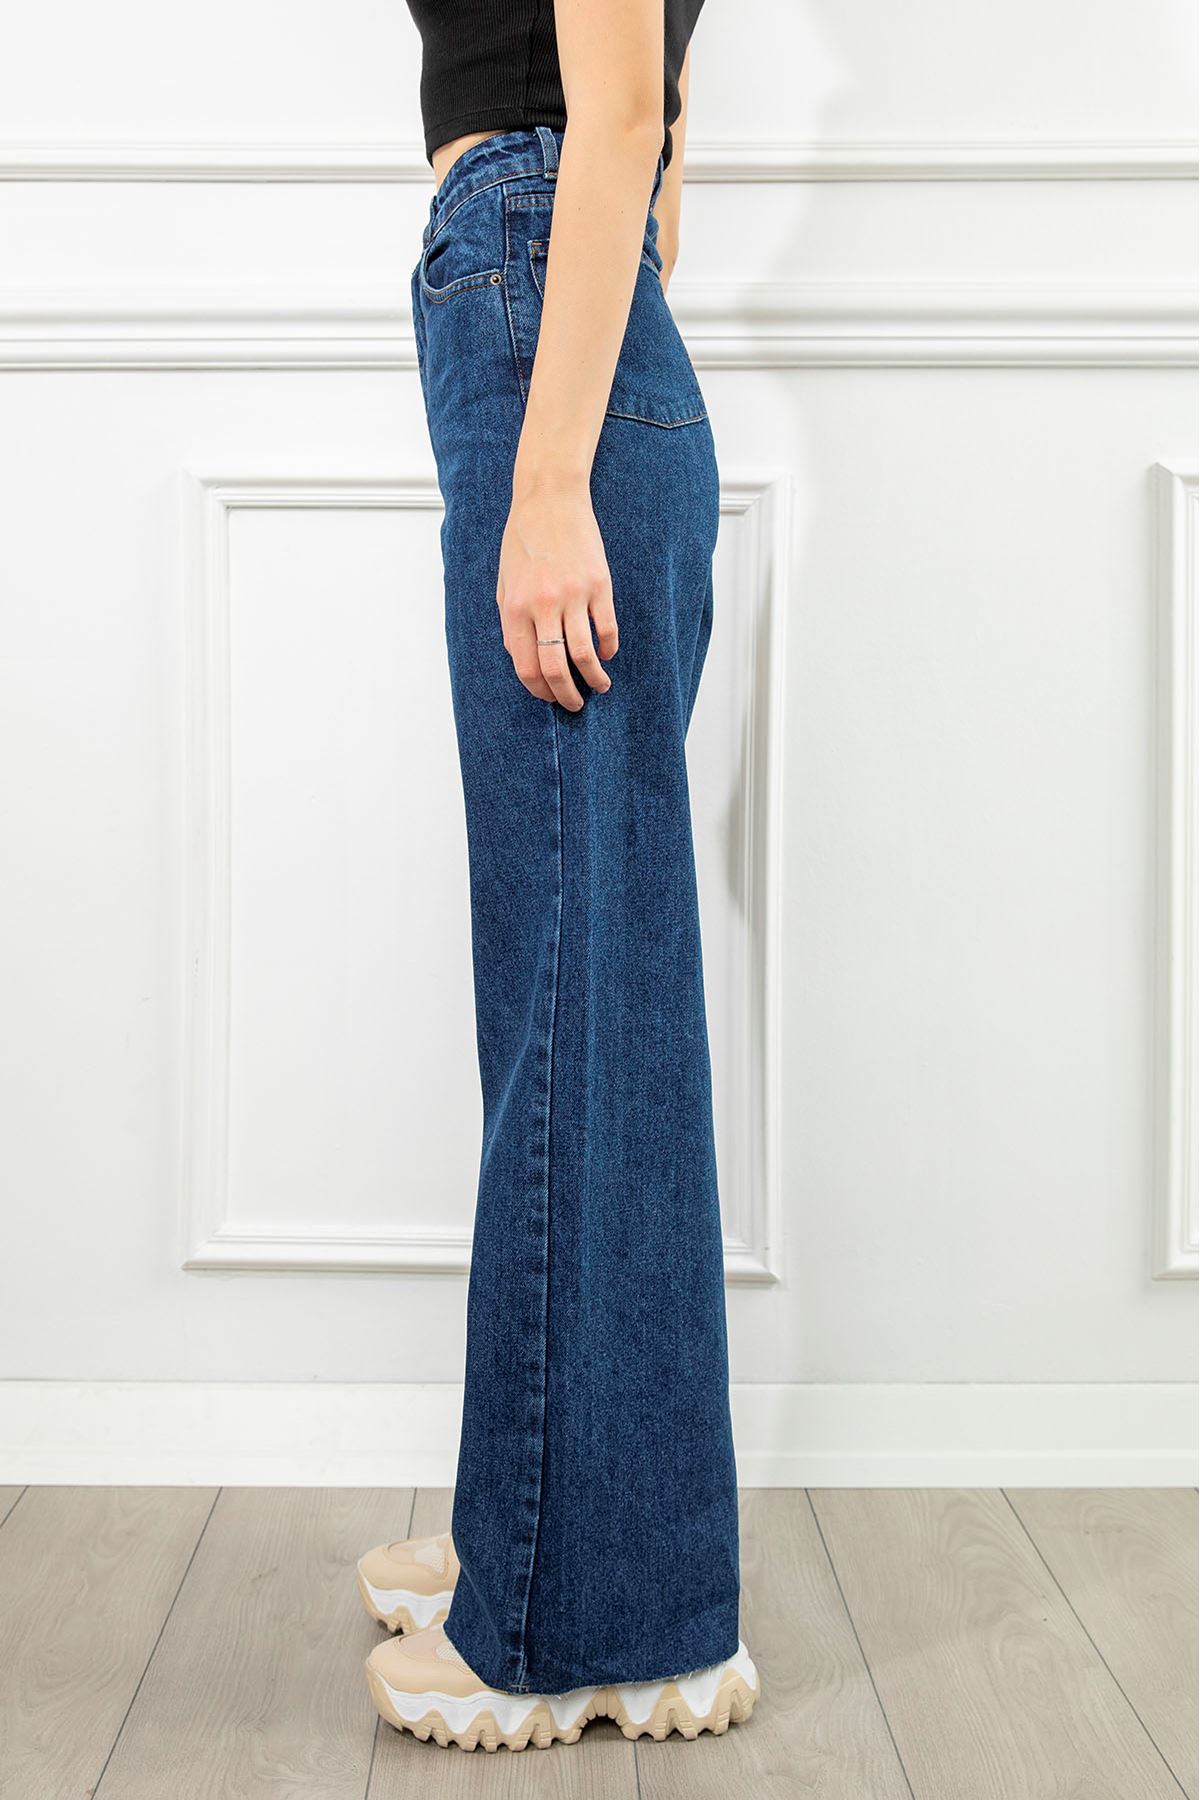 Denim Fabric Tight Fit Mini Skirt - Navy Blue 